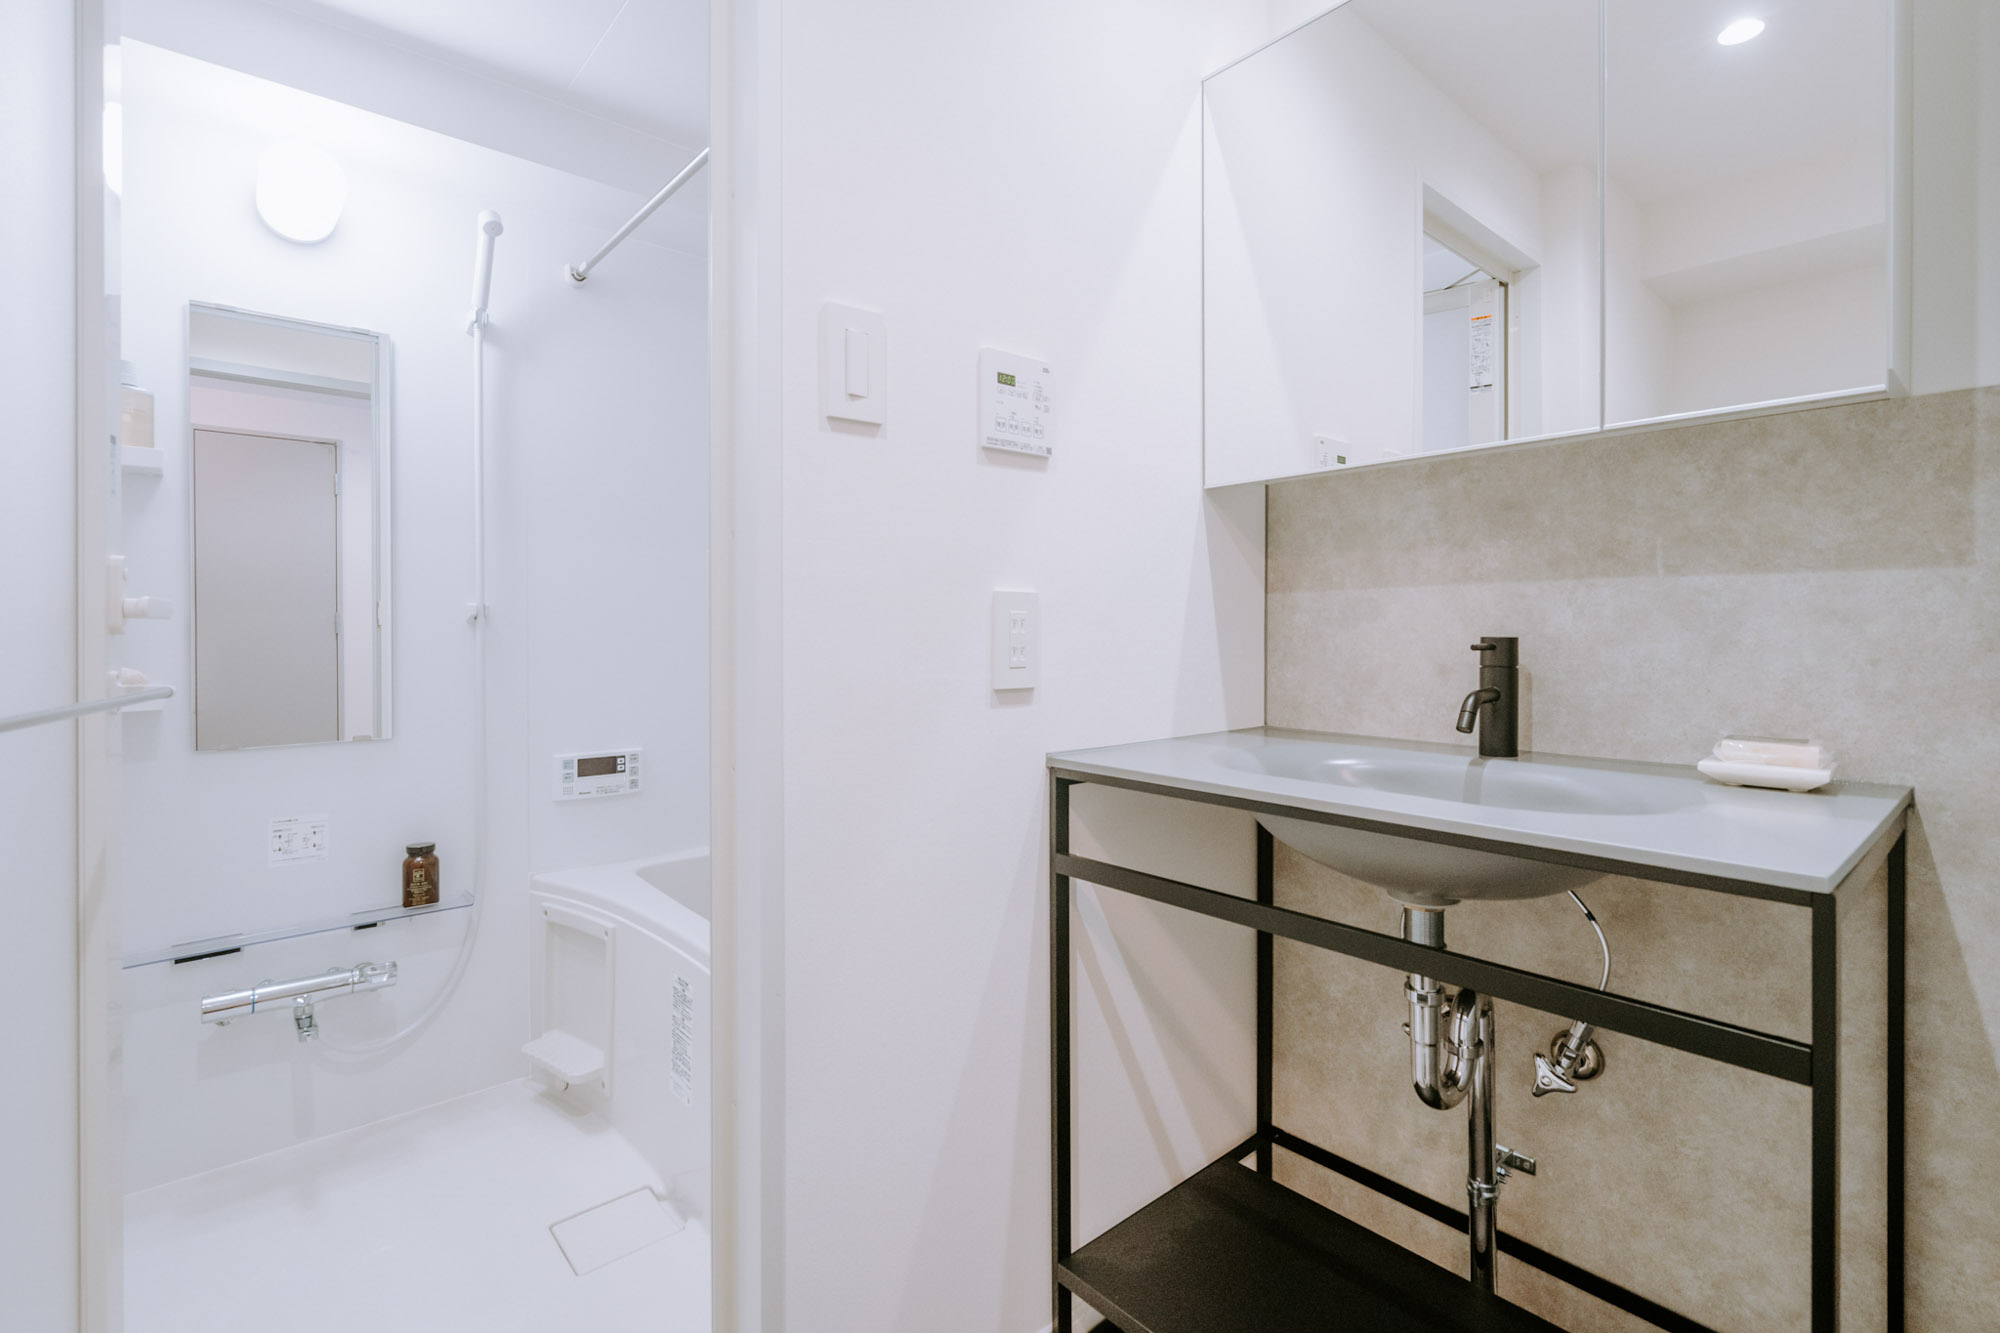 バスルームには、デザインのいい独立洗面台。浴室乾燥はもちろん、暖房、涼風といった機能も備わっていて快適に過ごせます。